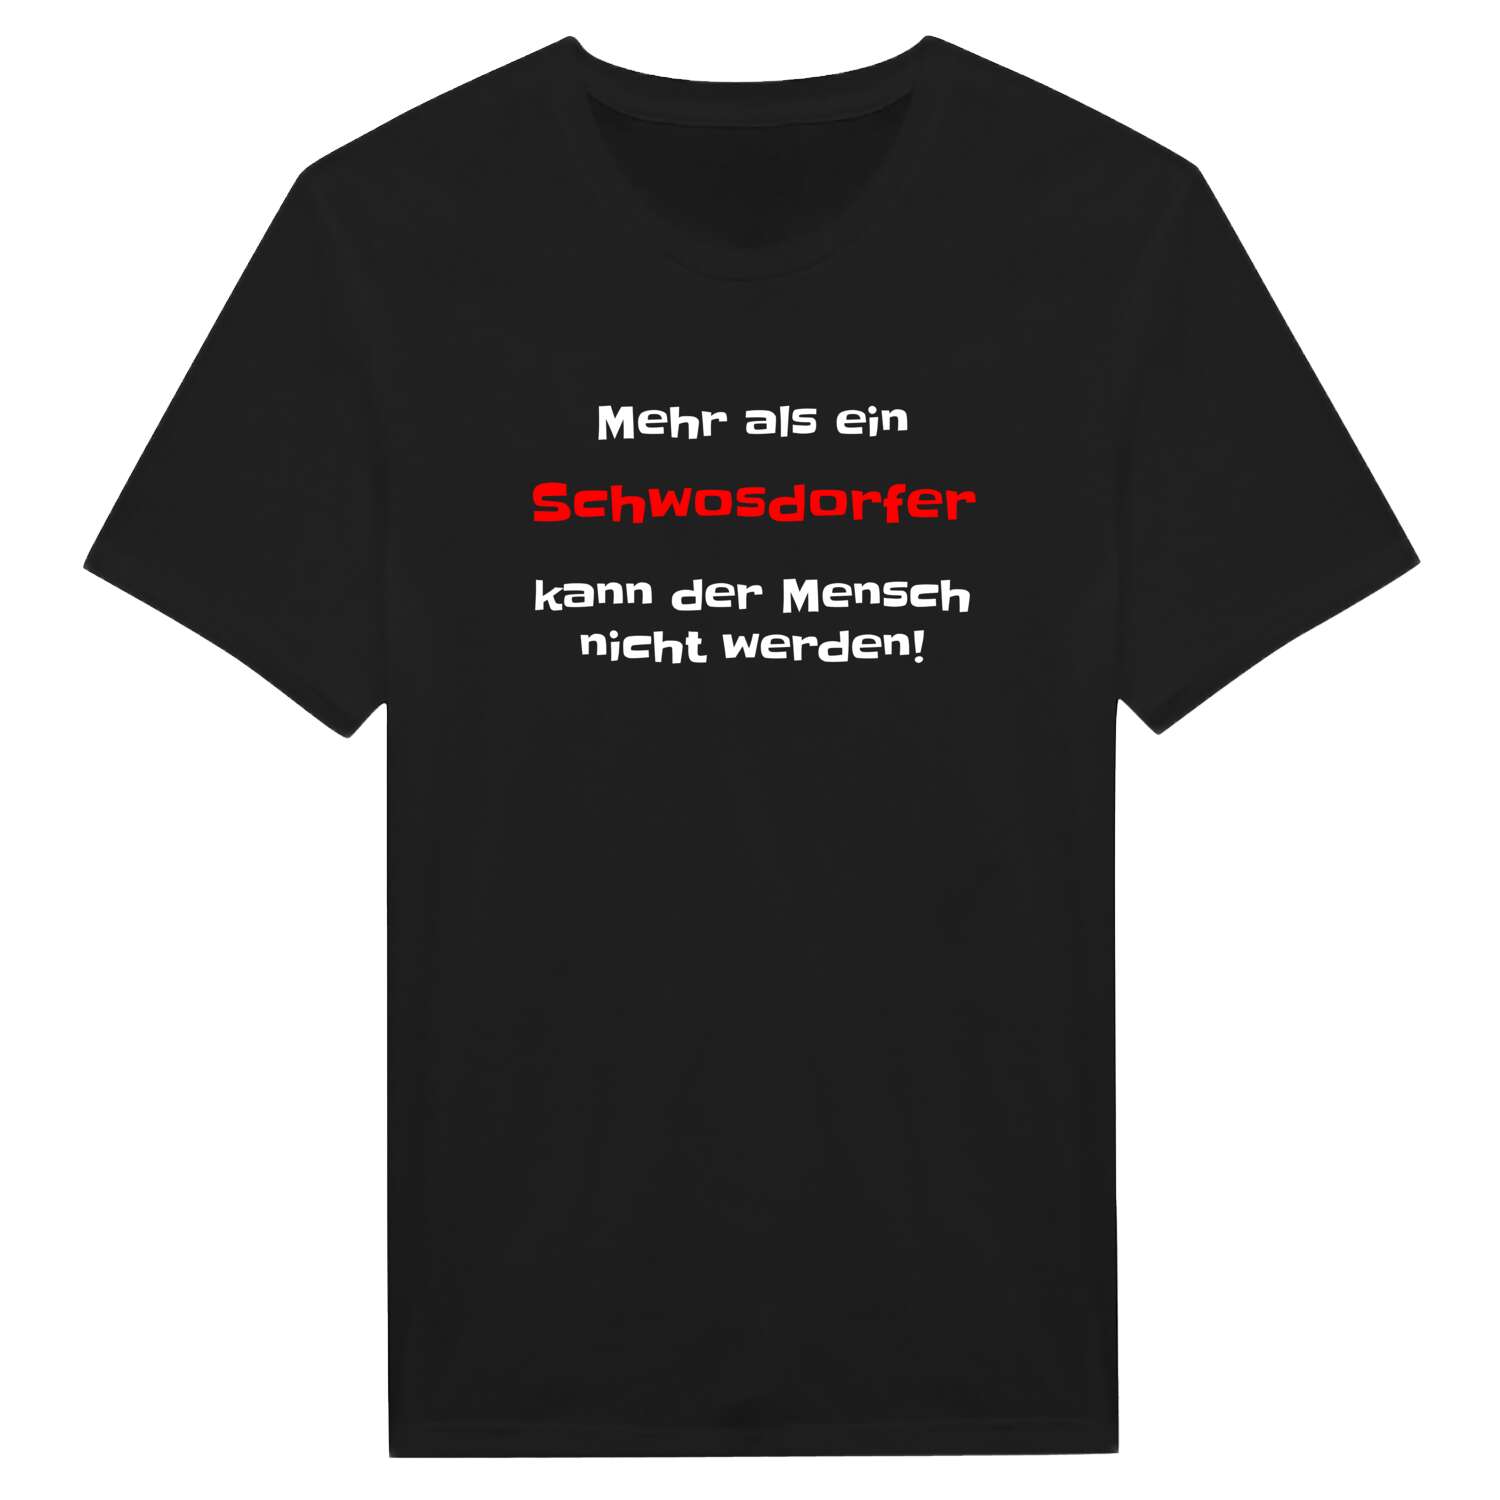 Schwosdorf T-Shirt »Mehr als ein«